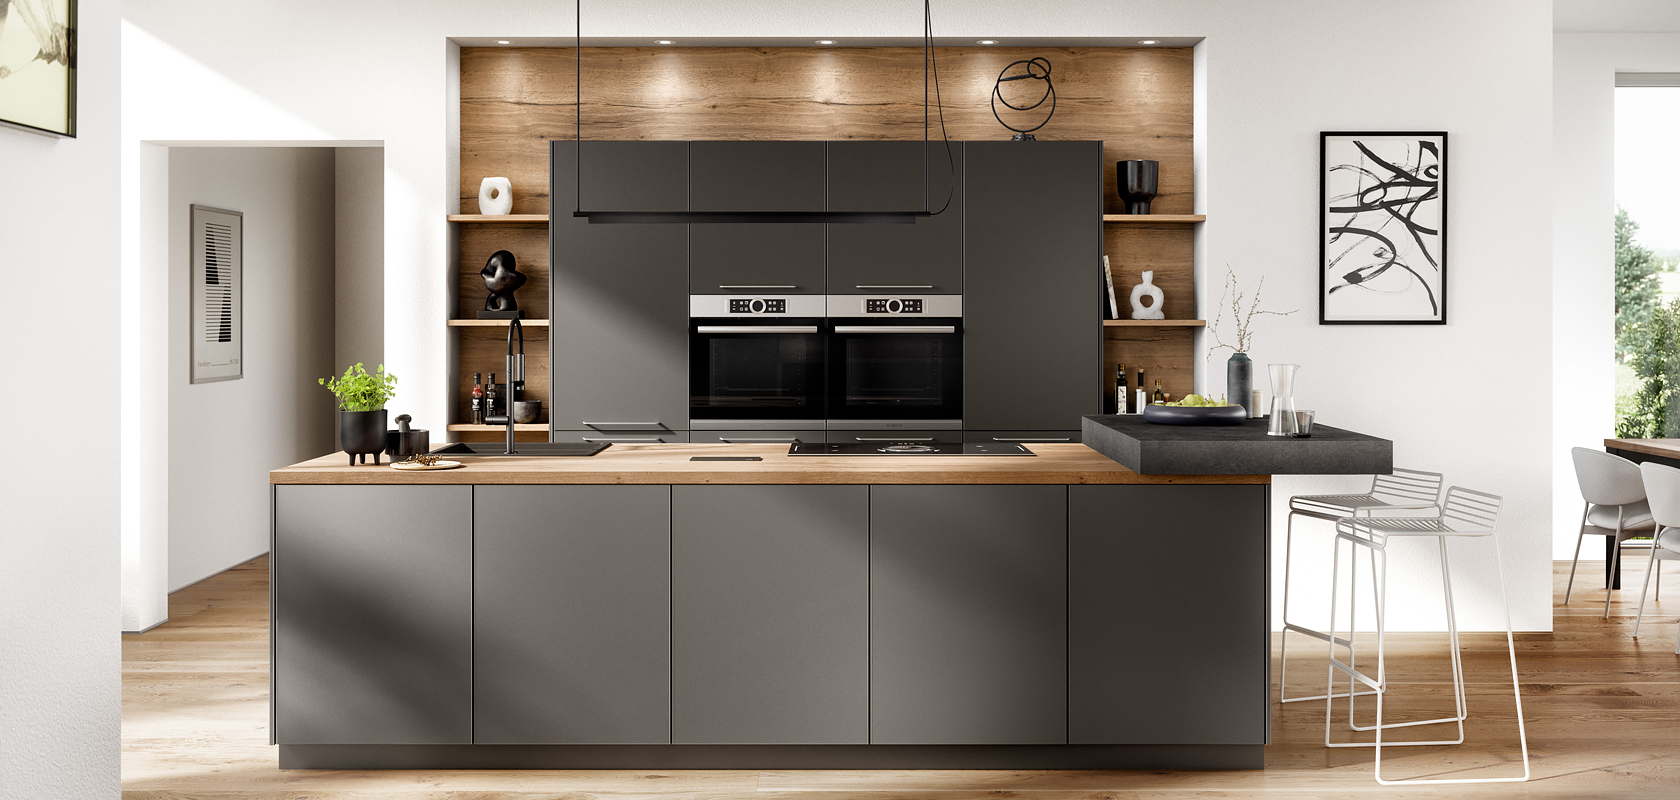 Intérieur de cuisine moderne avec des armoires sombres élégantes, des appareils intégrés et des accents en bois, mêlant fonctionnalité et style dans un design de maison lumineux et minimaliste.